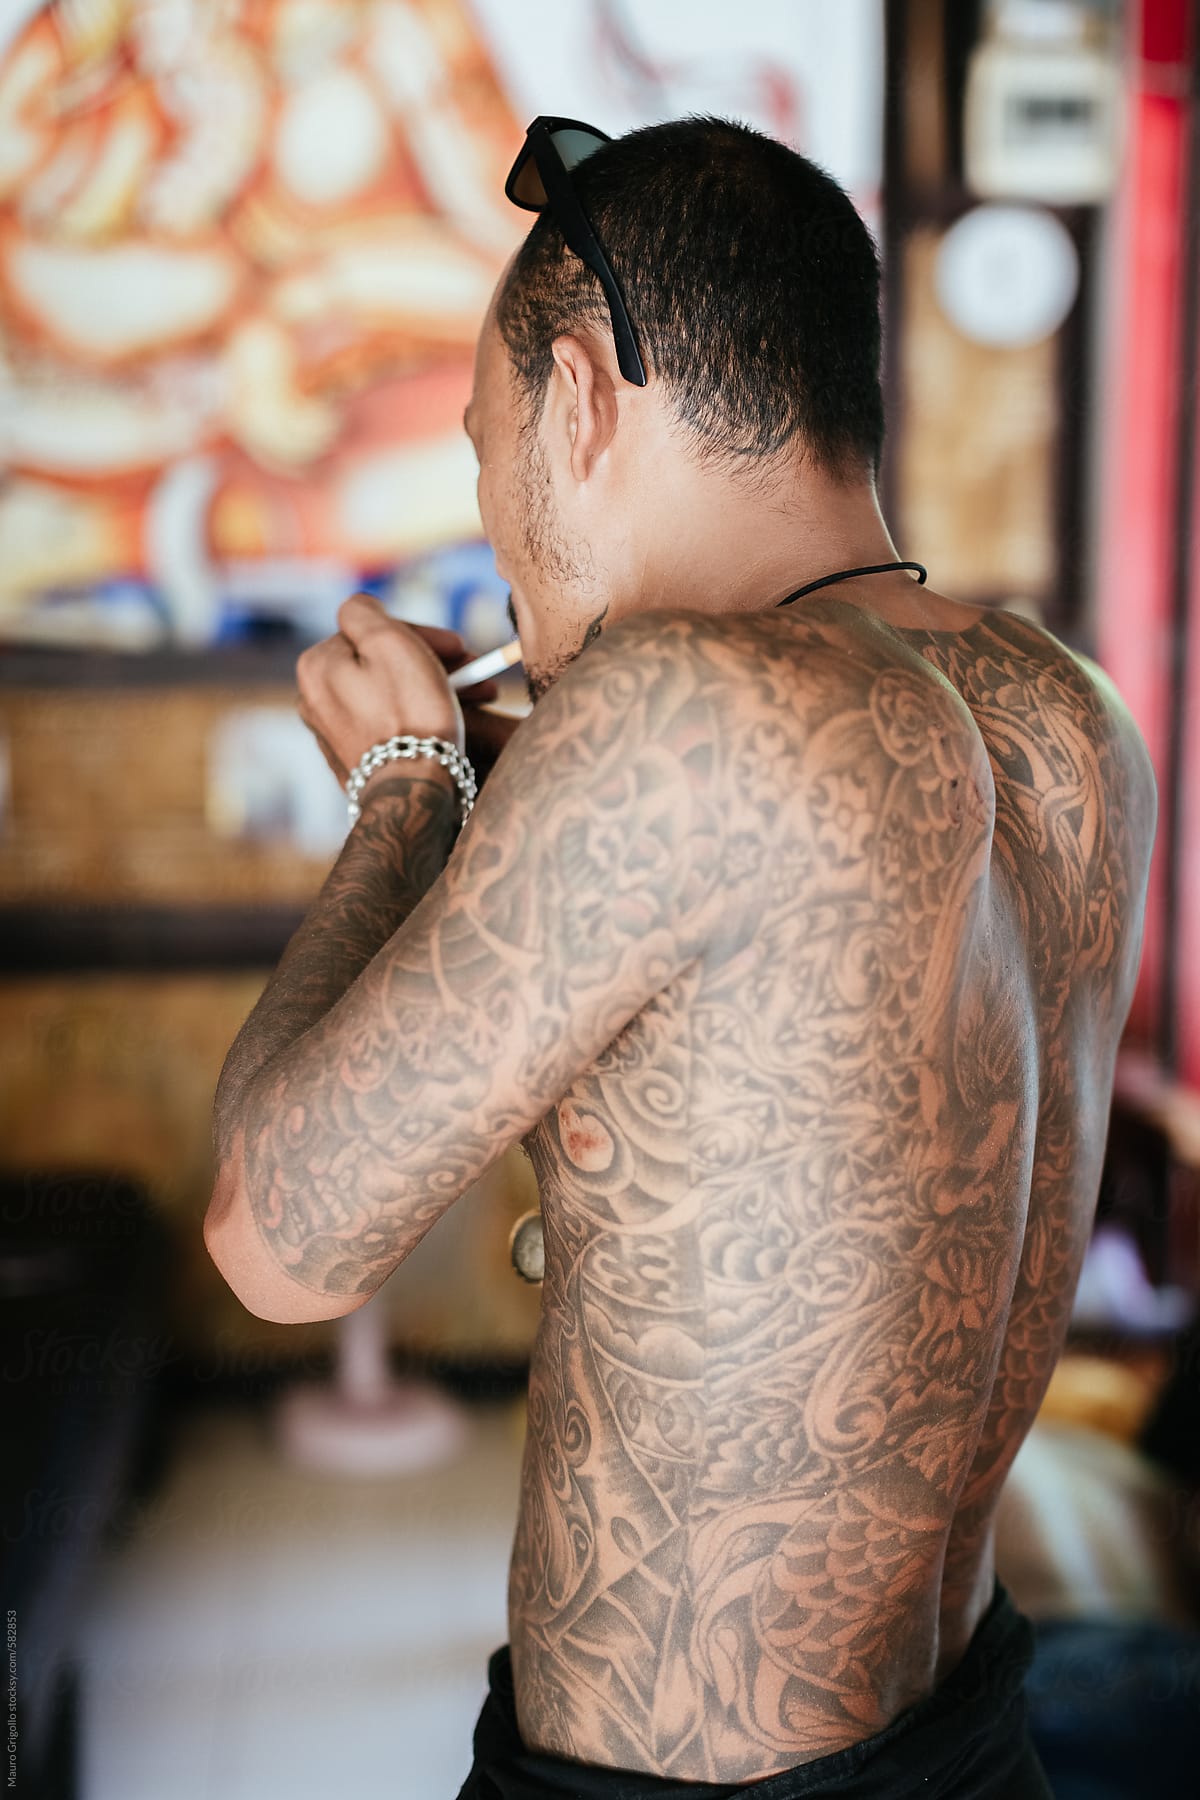 Thai Tattoo Artist Smoking A Cigarette During A Break